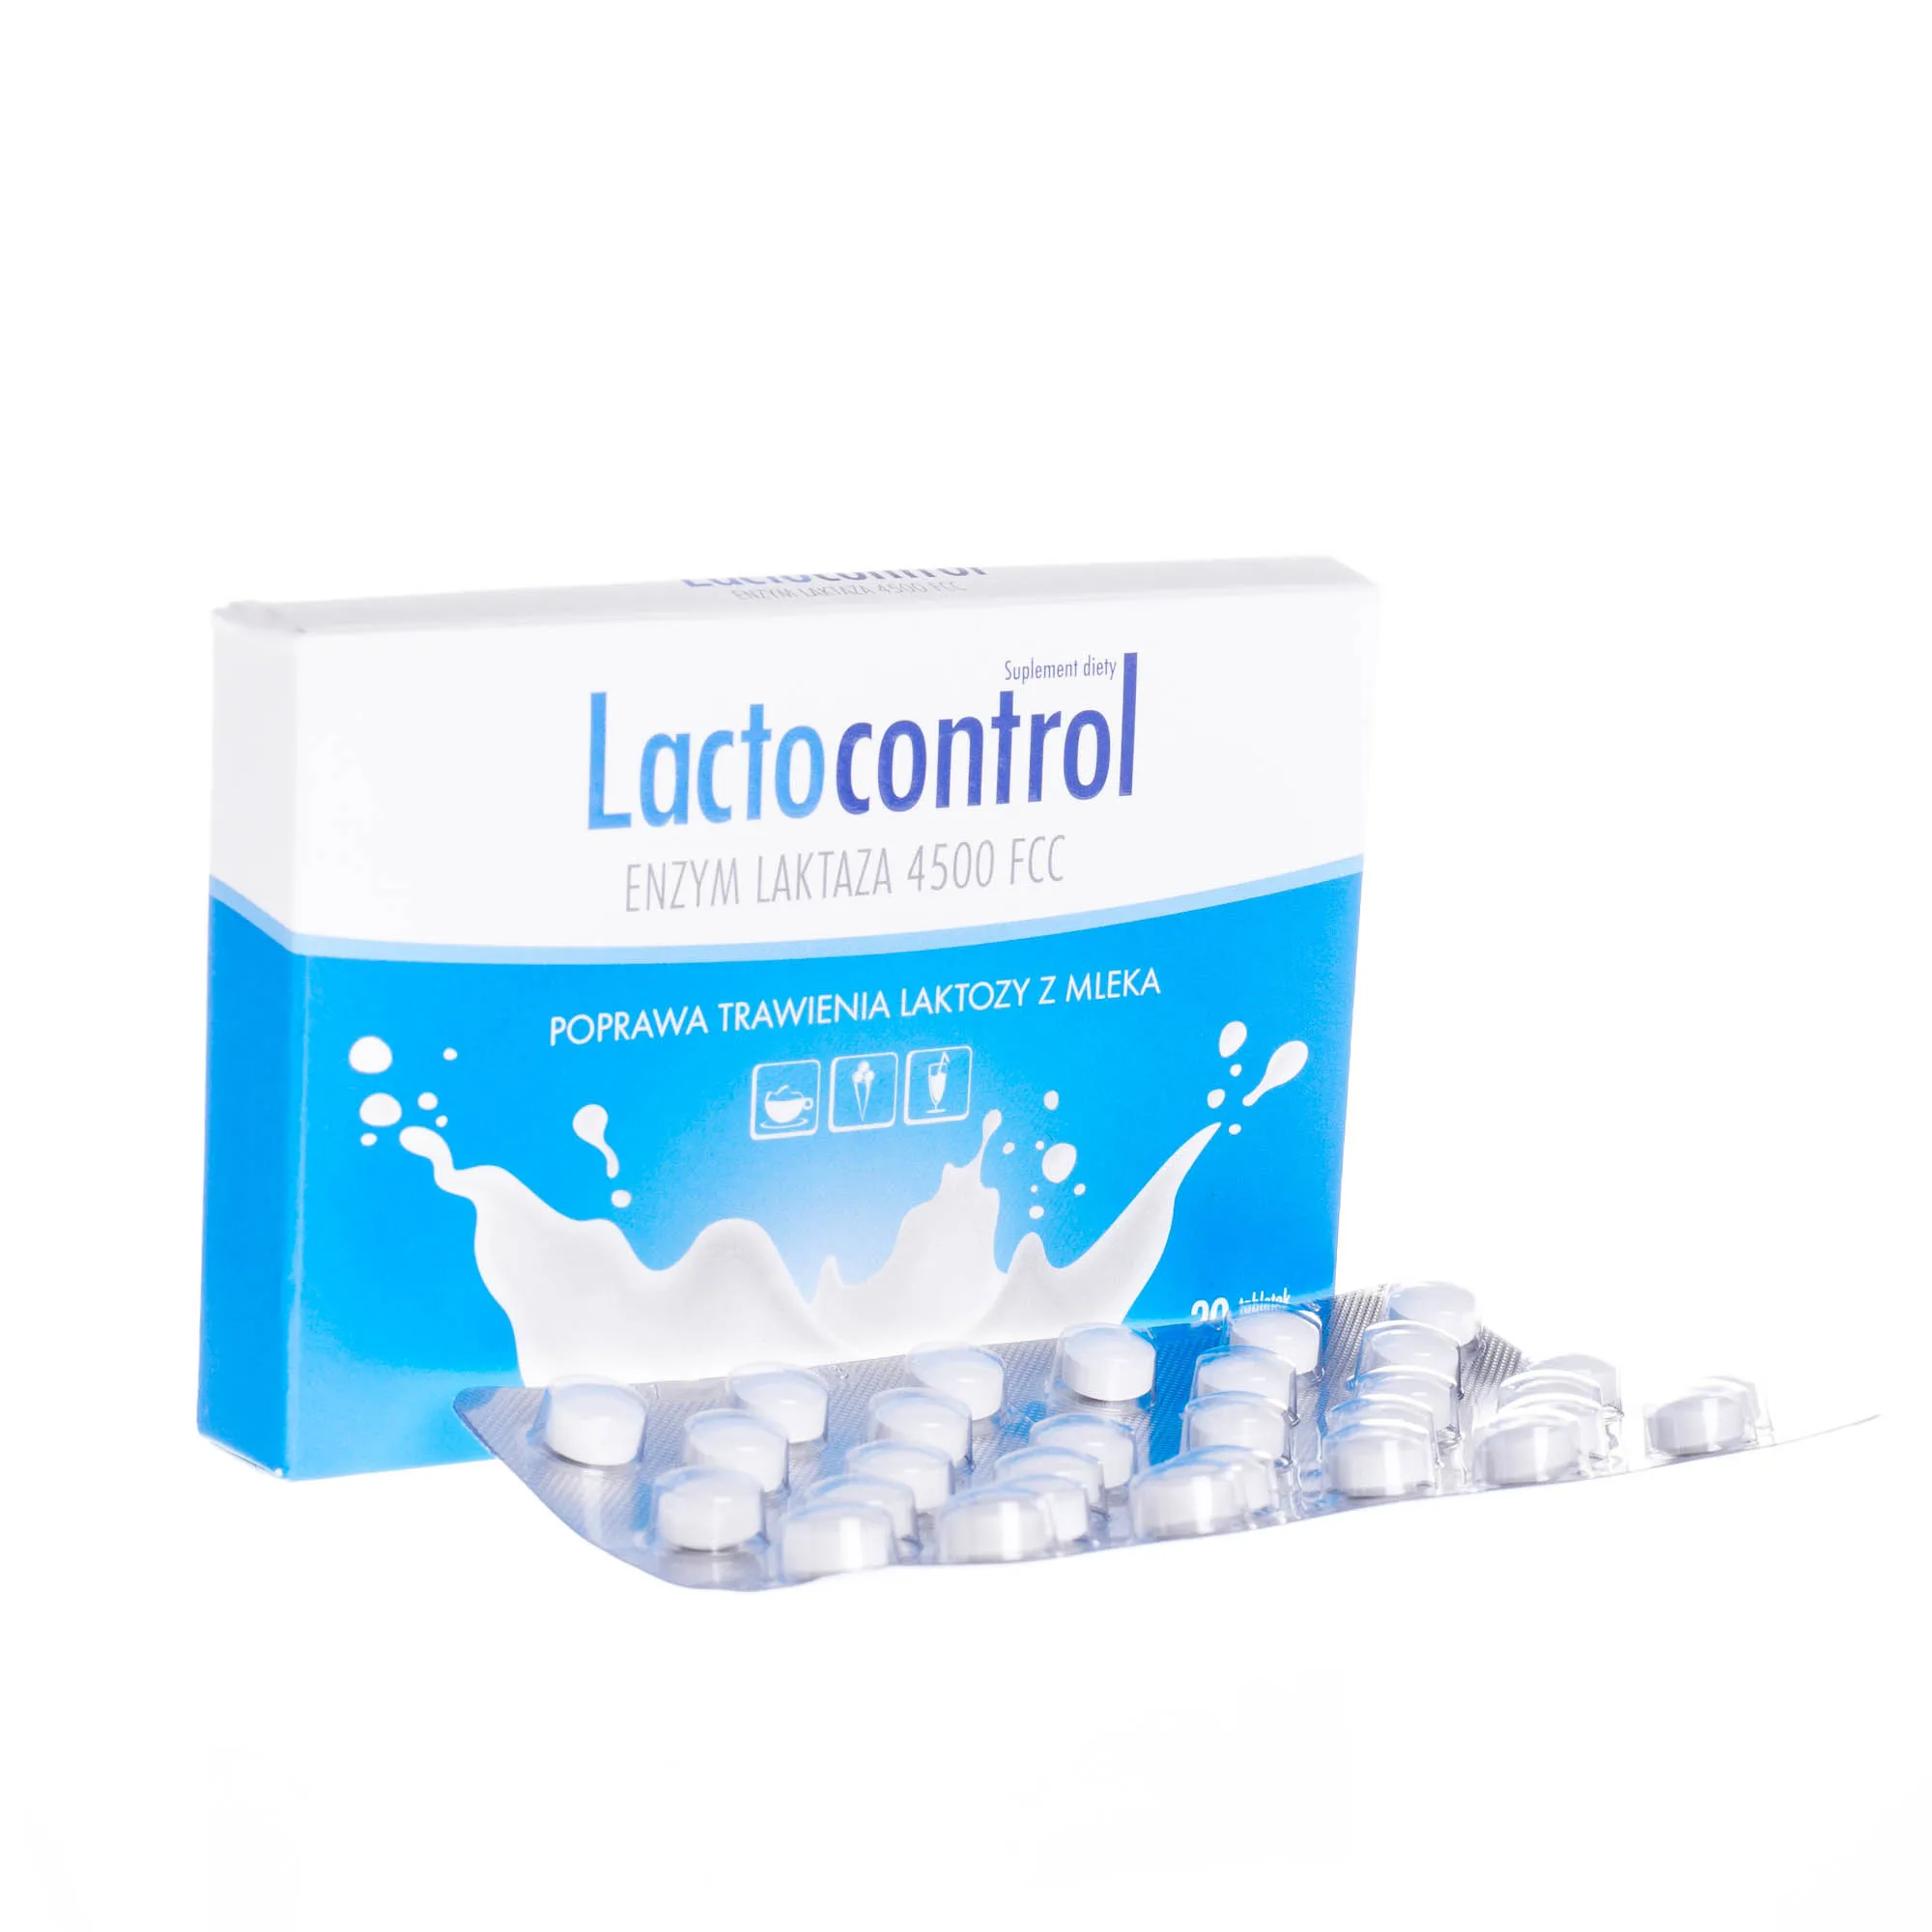 Lactocontrol - suplement diety poprawiający trawienie laktozy z mleka, 30 tabletek